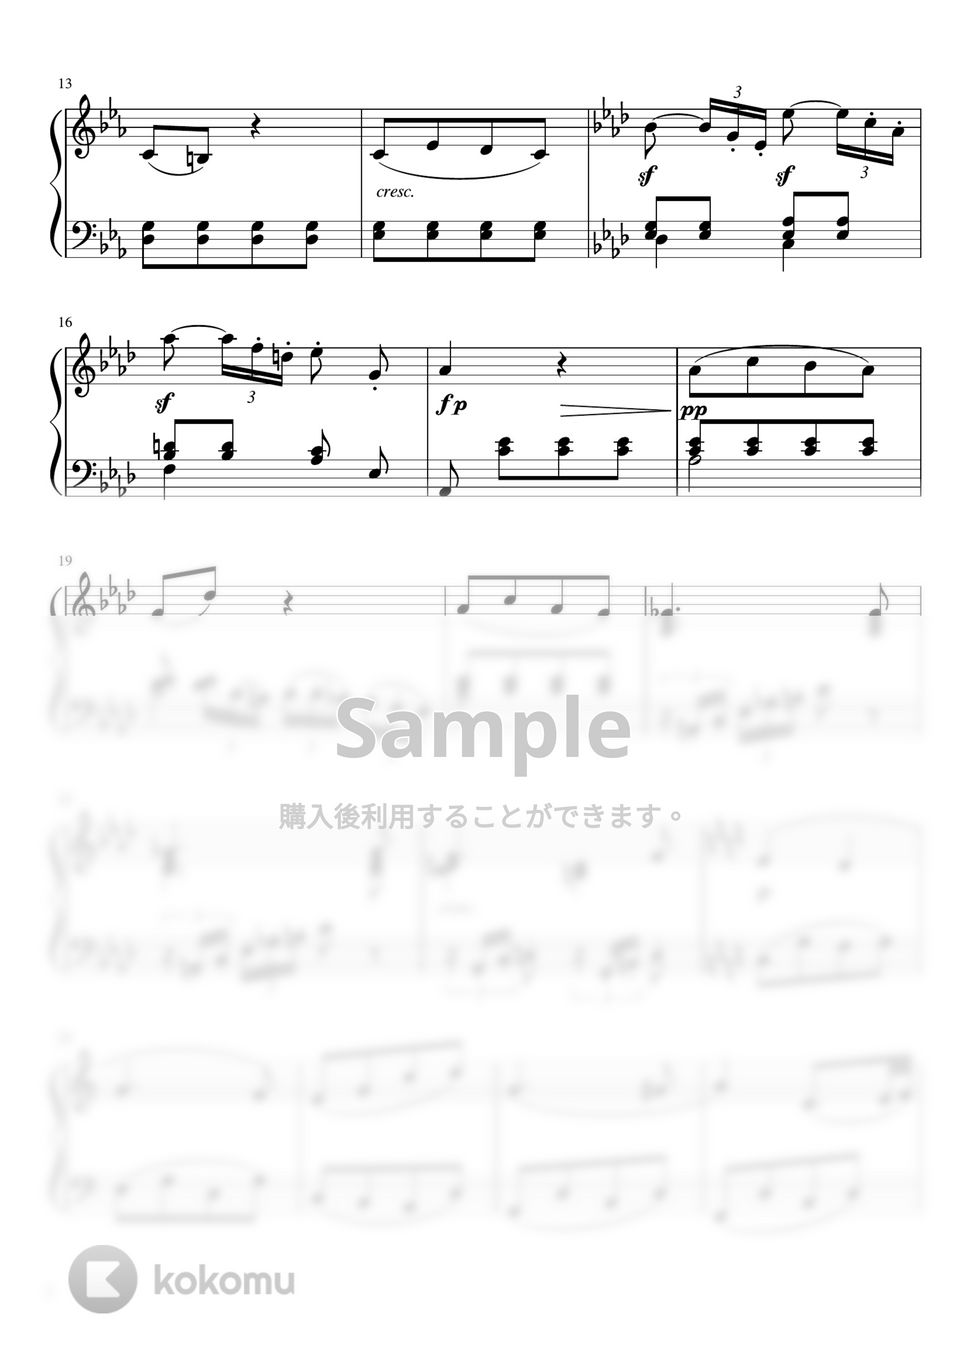 ベートーヴェン - ピアノソナタ第8番第2楽章「悲愴」 (C・ピアノソロ初〜中級) by pfkaori